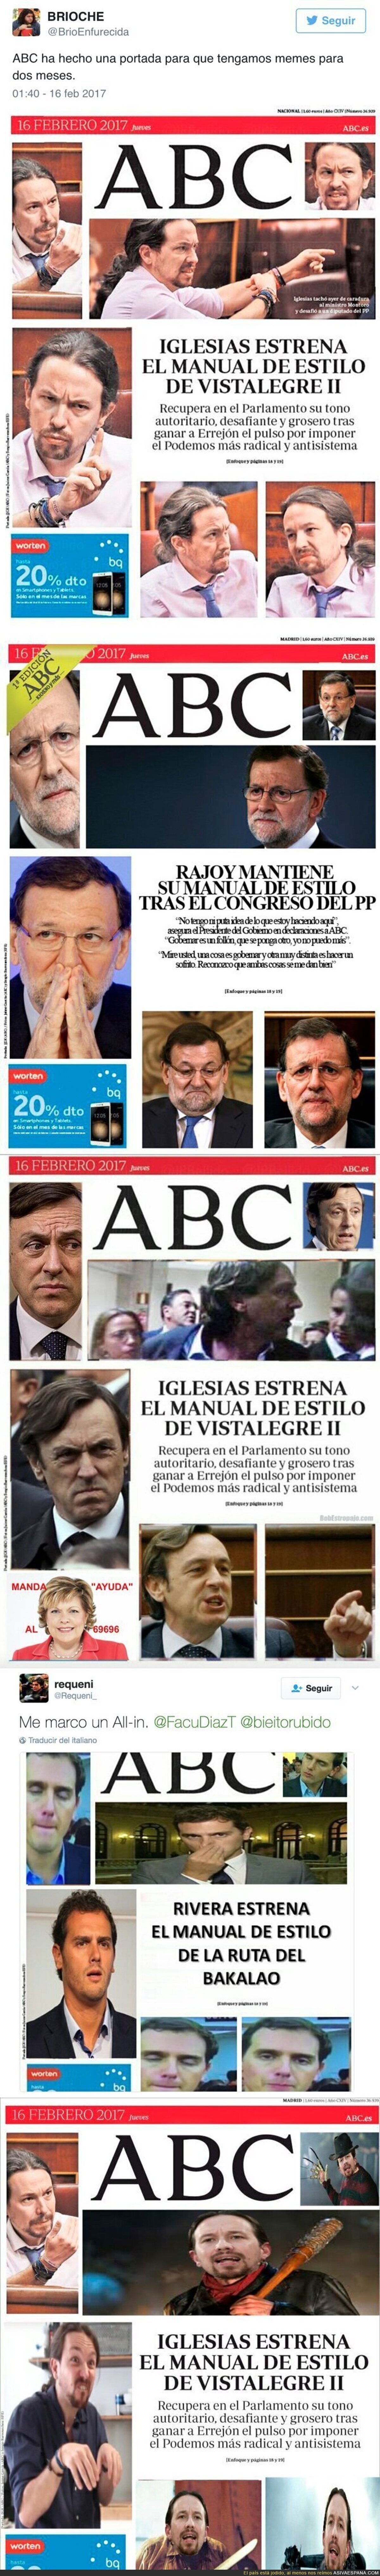 El ABC saca una portada con caras enfadadas de Pablo Iglesias e internet se llena de parodias